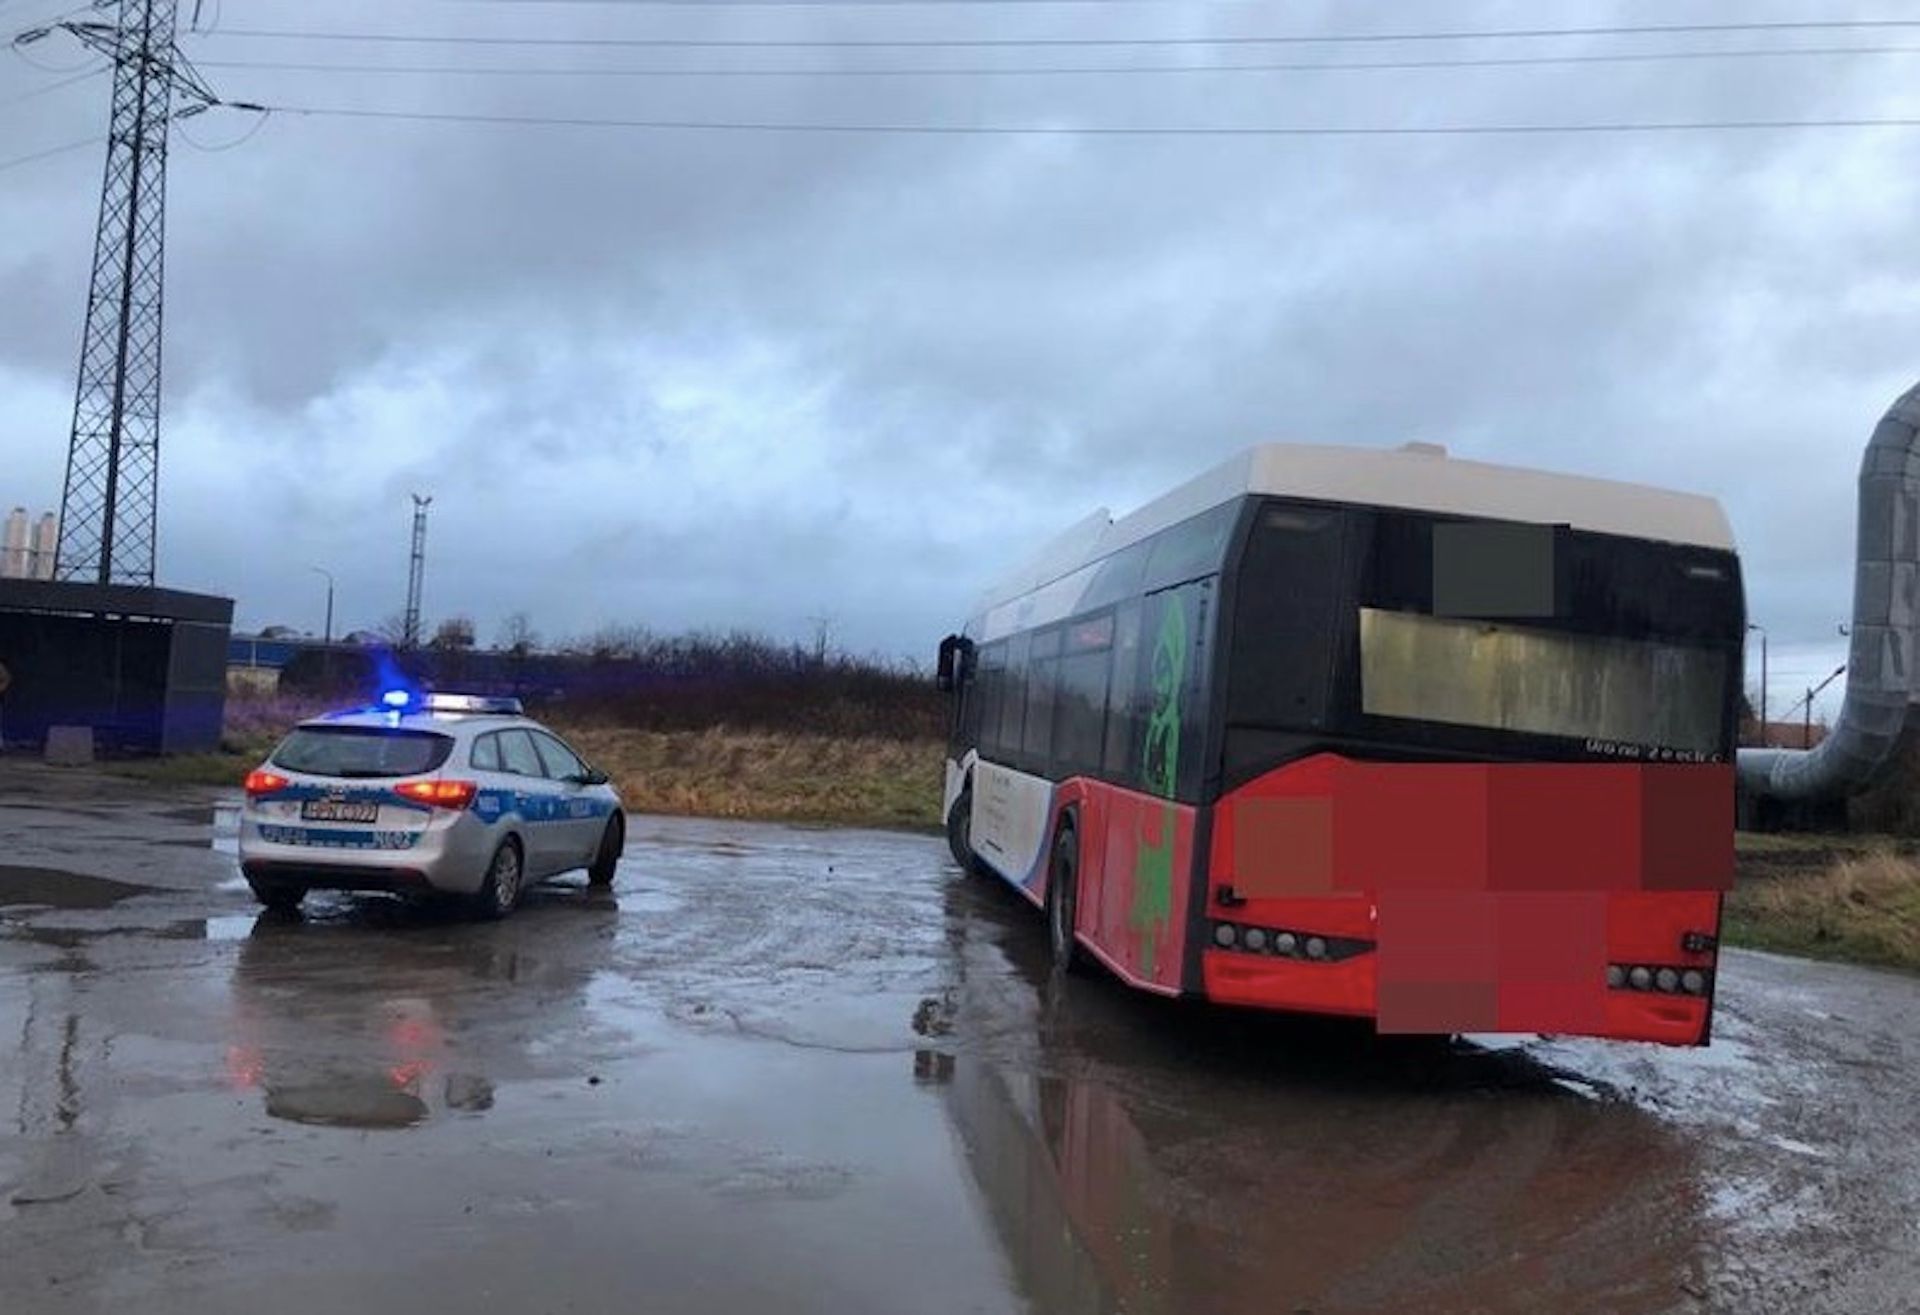 Kierowca autobusu wiózł pasażerów pod wpływem narkotyków